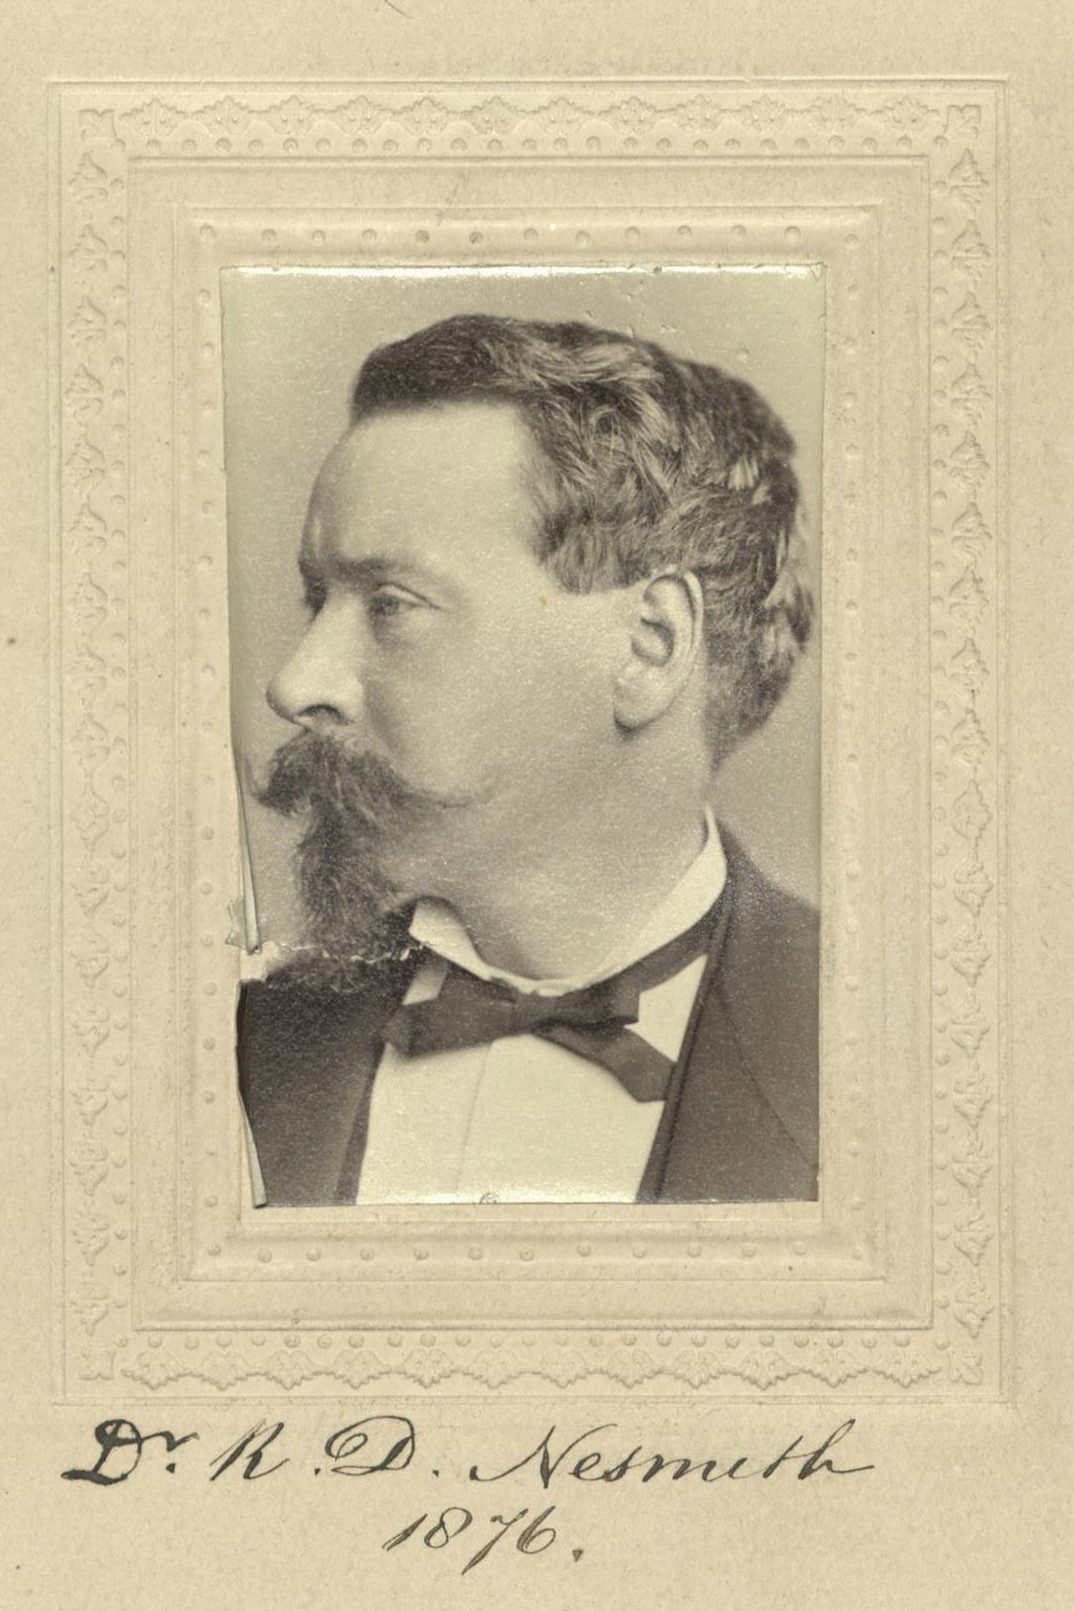 Member portrait of Robert D. Nesmith